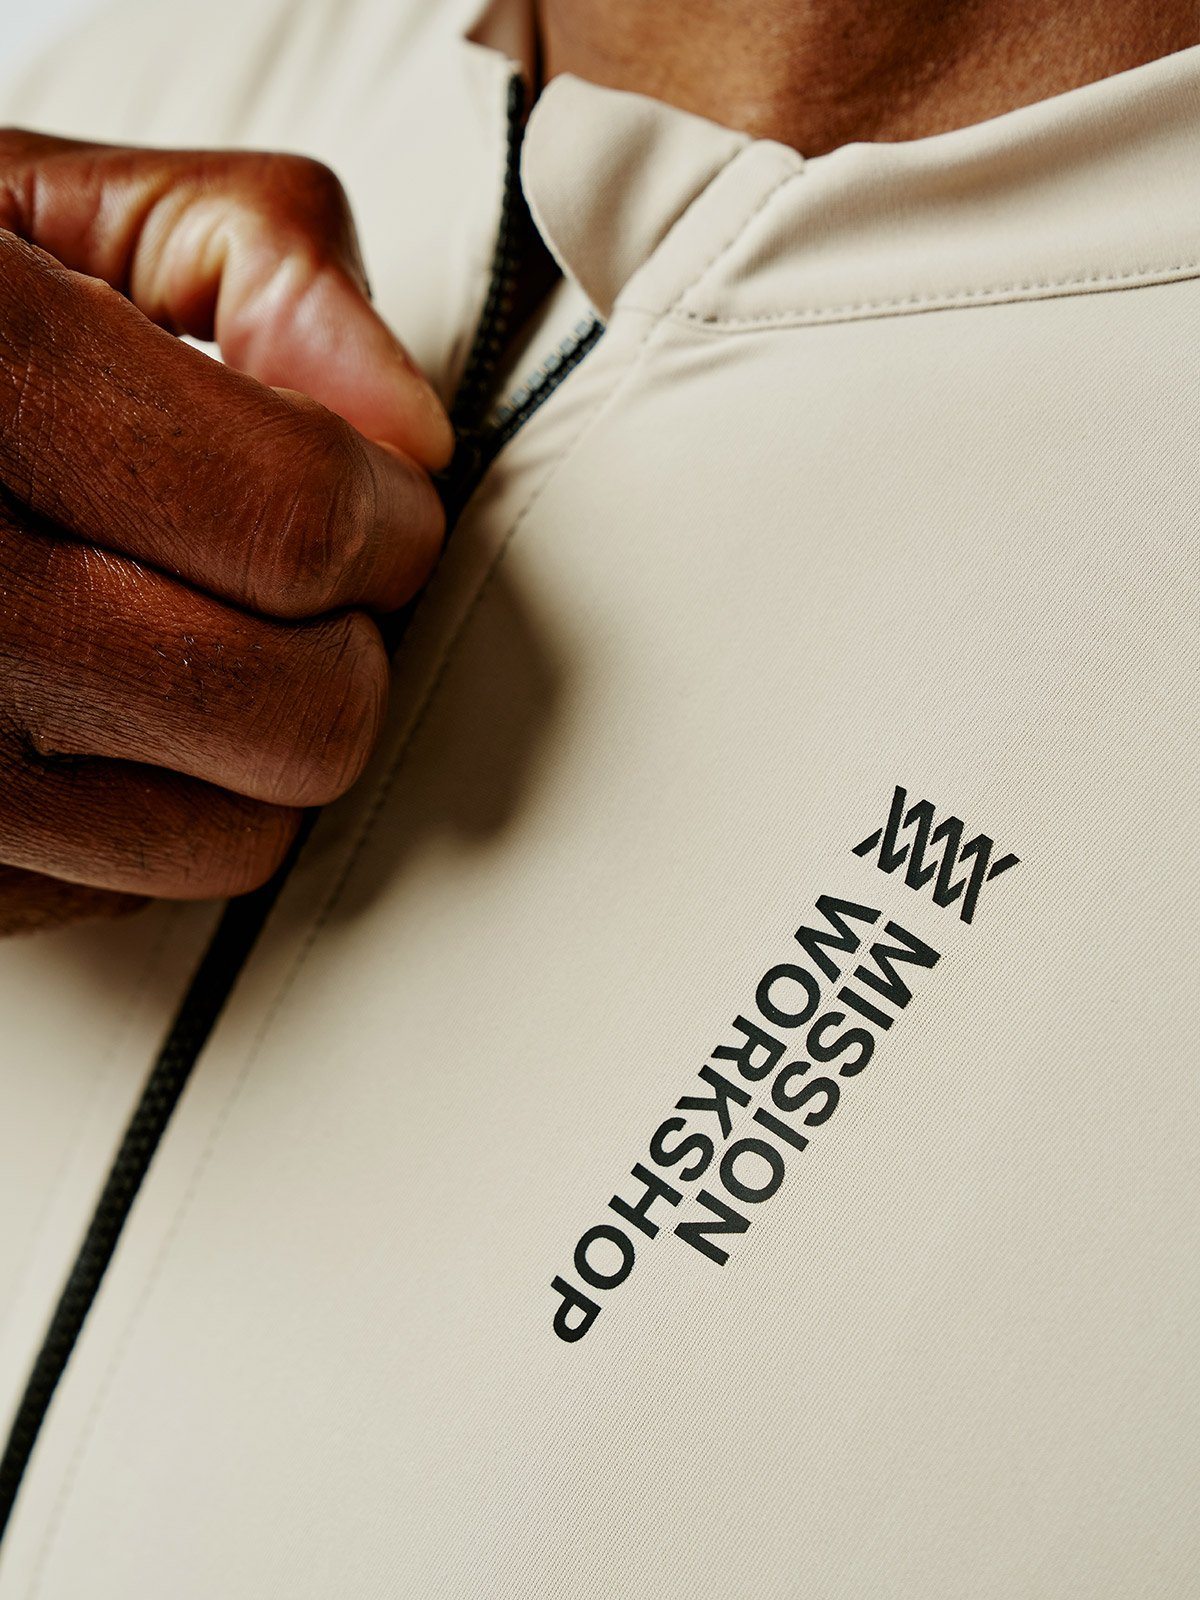 Mission Pro Jersey Men's by Mission Workshop - Weerbestendige tassen & technische kleding - San Francisco & Los Angeles - Gemaakt om te doorstaan - Voor altijd gegarandeerd